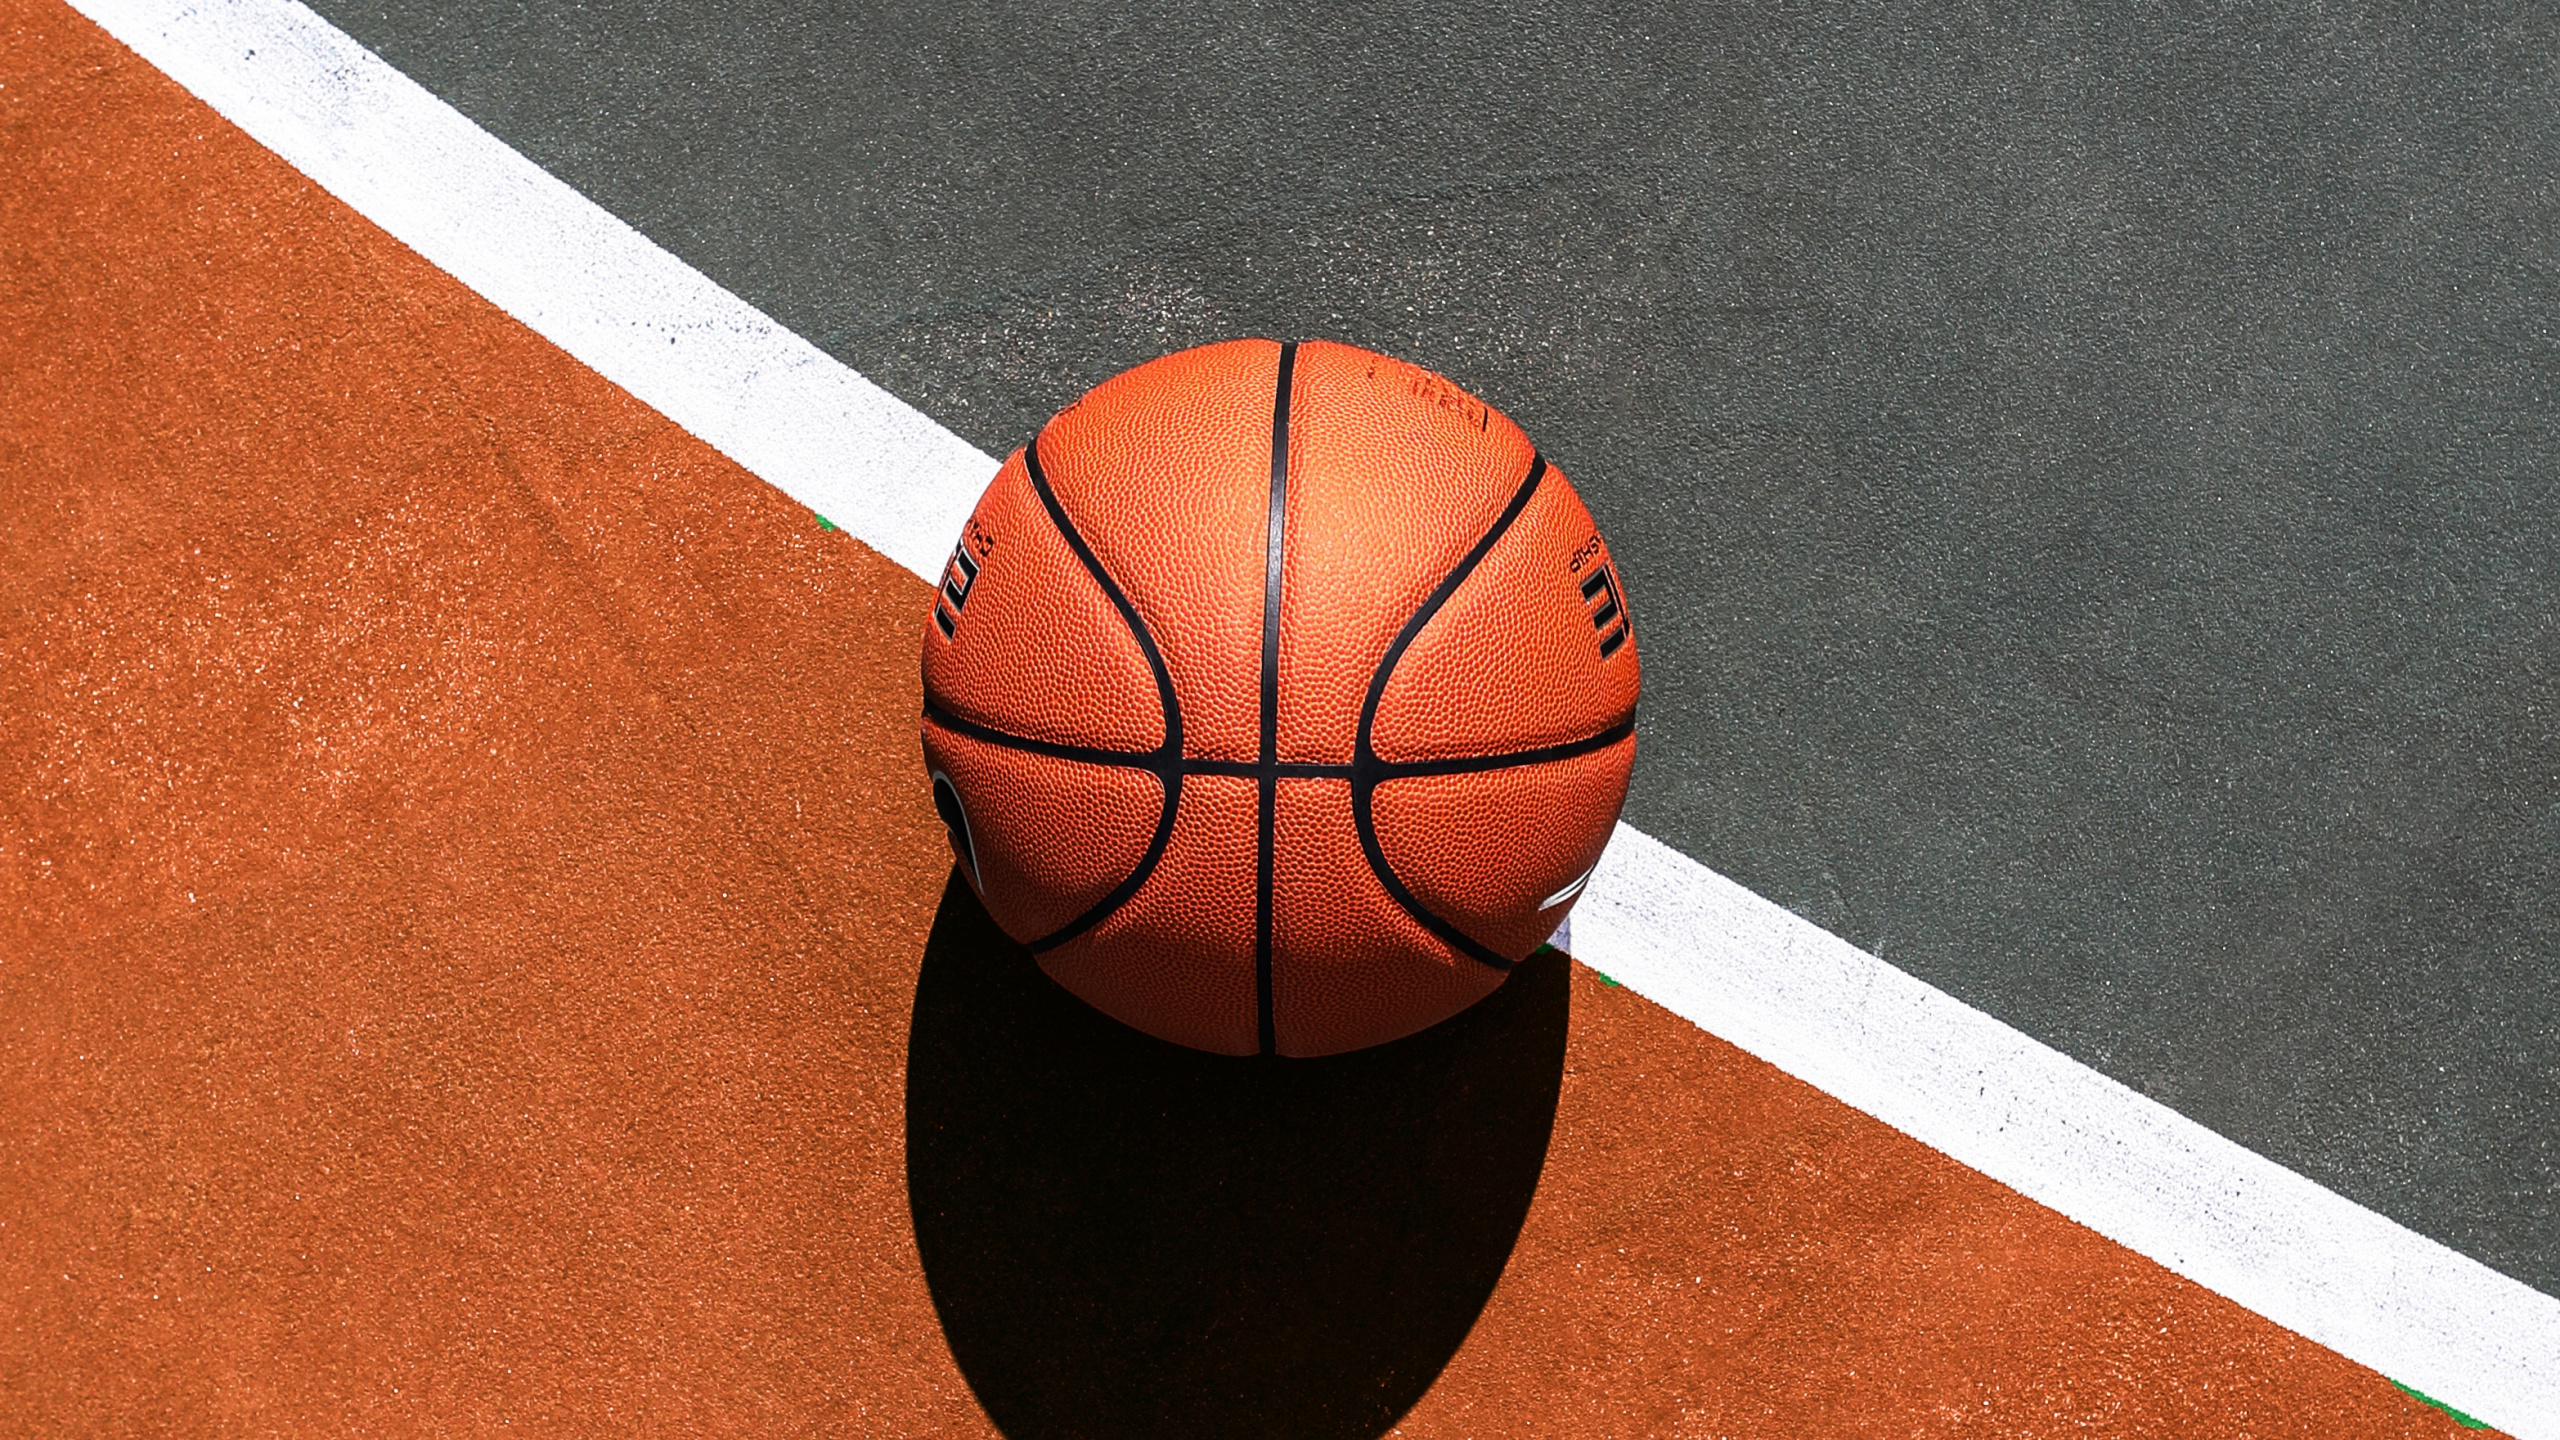 篮球, 篮球场, 运动场地, 球, 团队运动 壁纸 2560x1440 允许